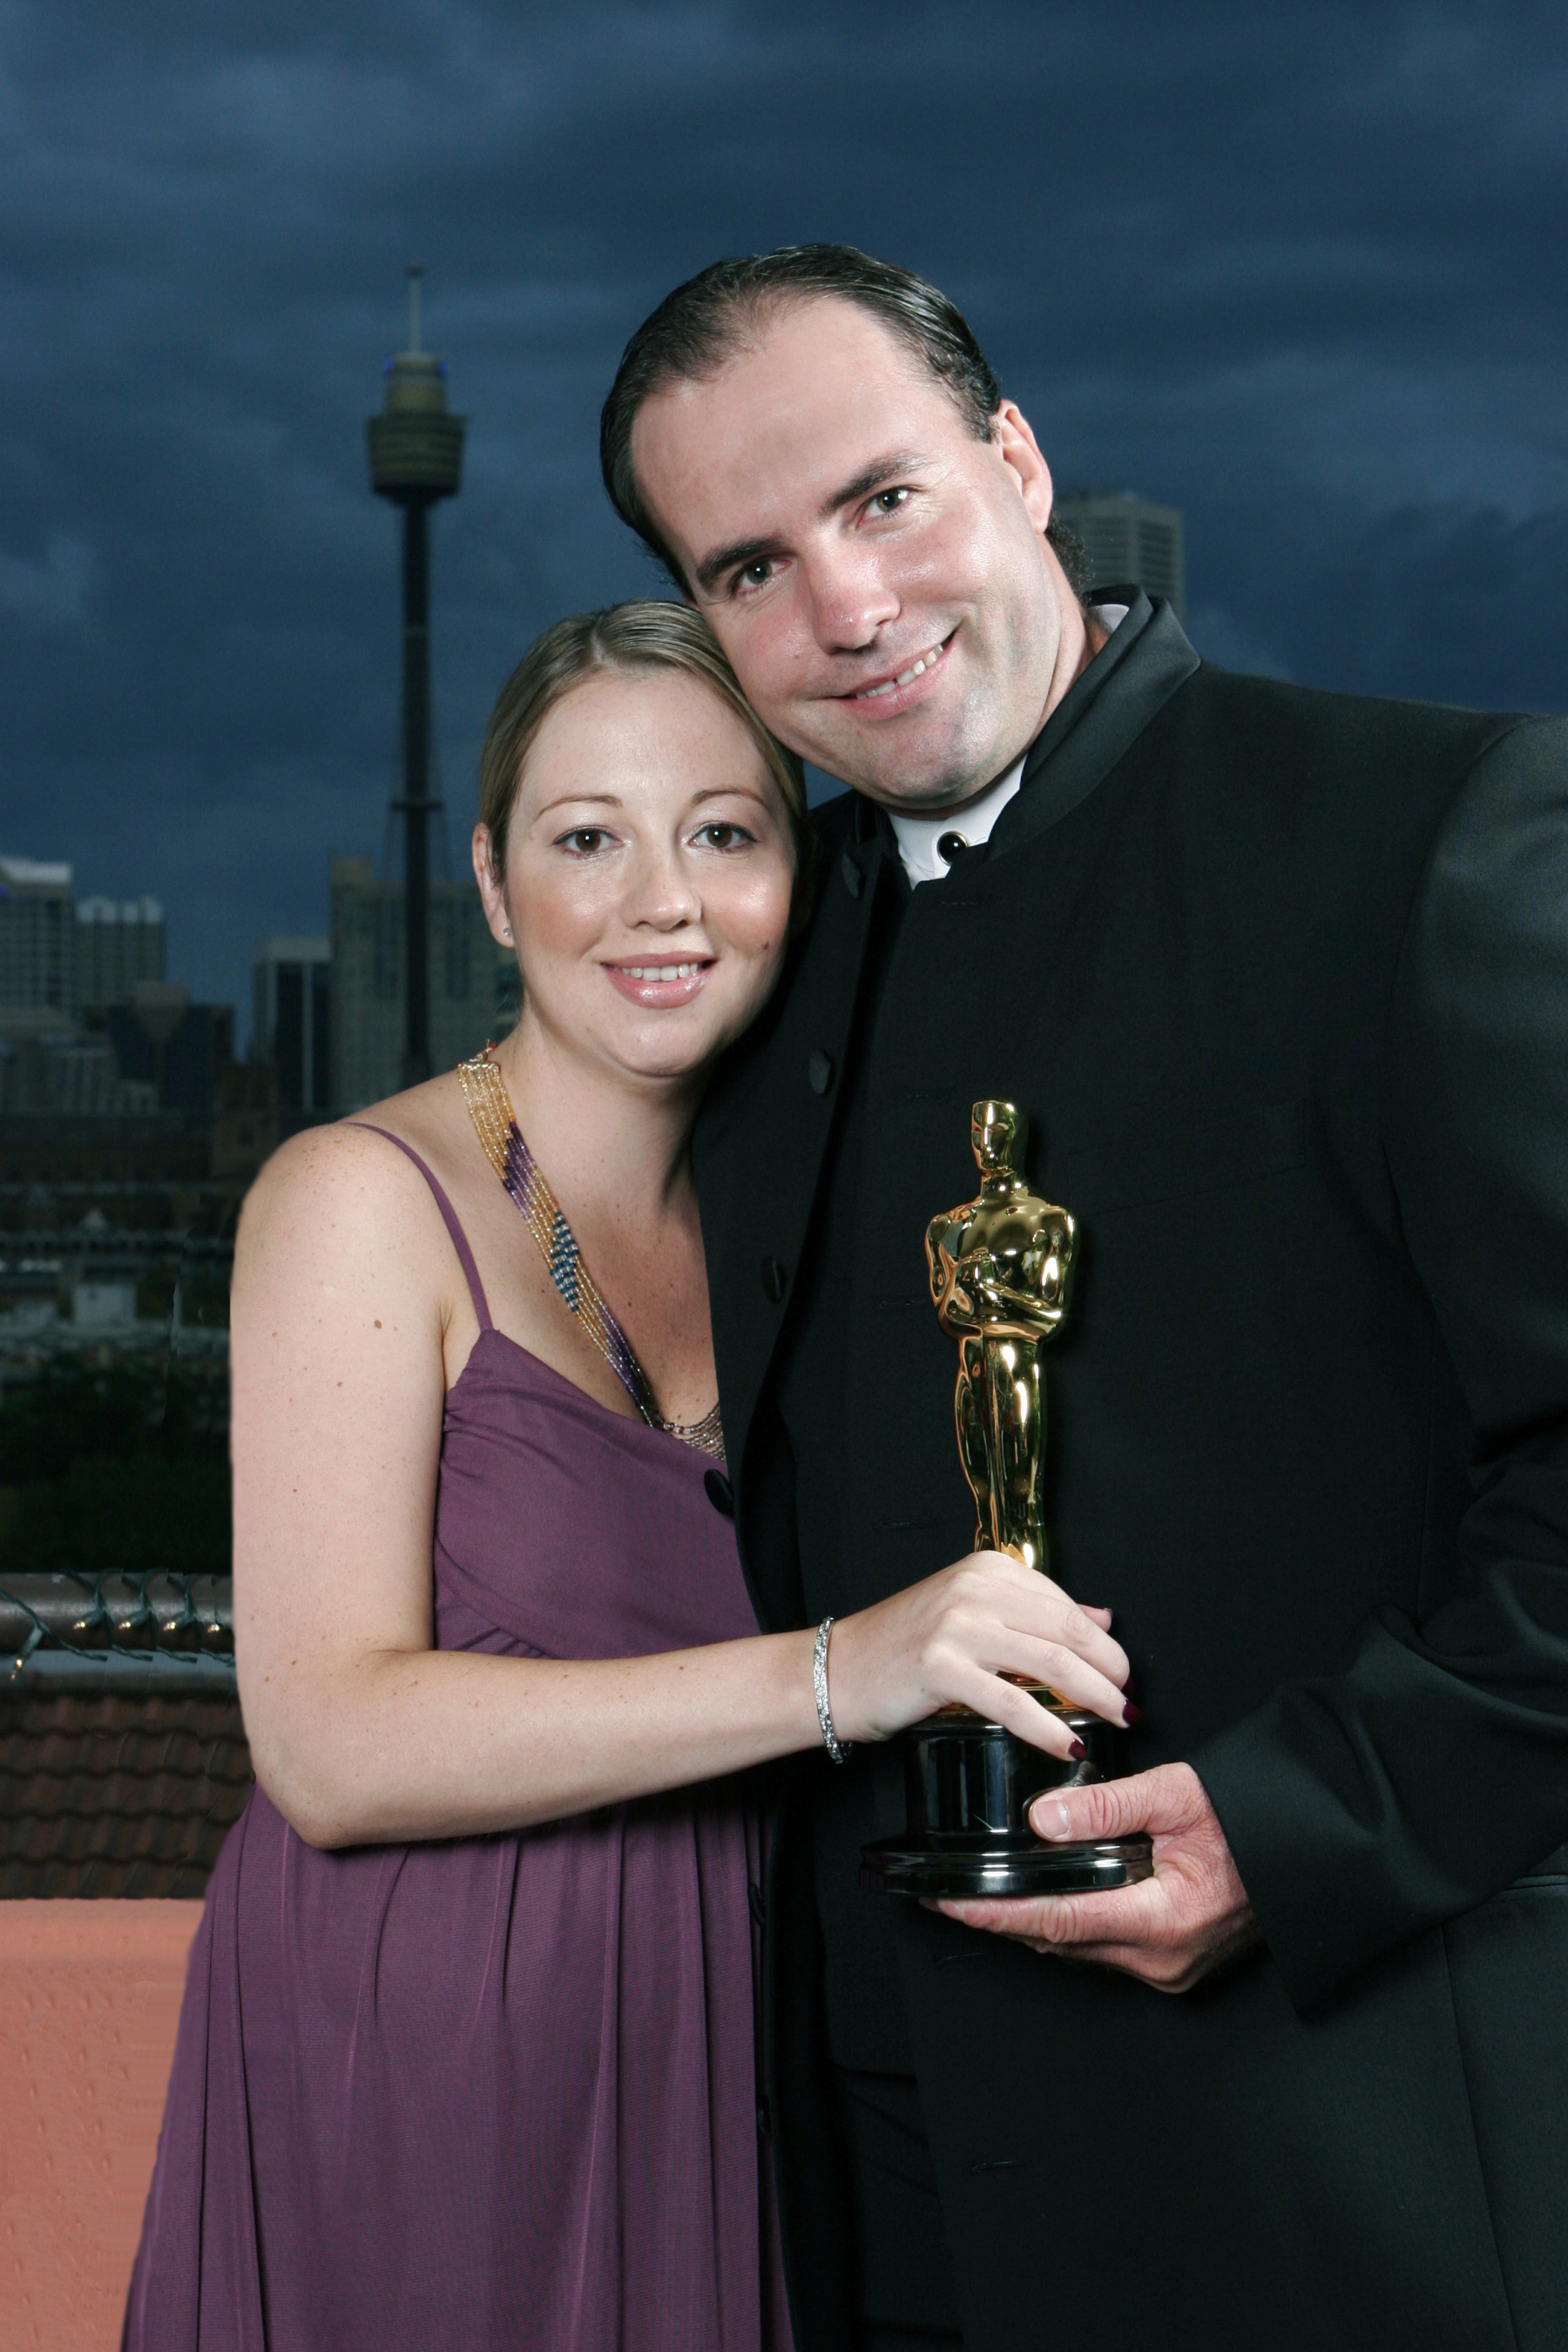 Greg Van Borssum & Debbie-Lee at Happy Feet Oscars party